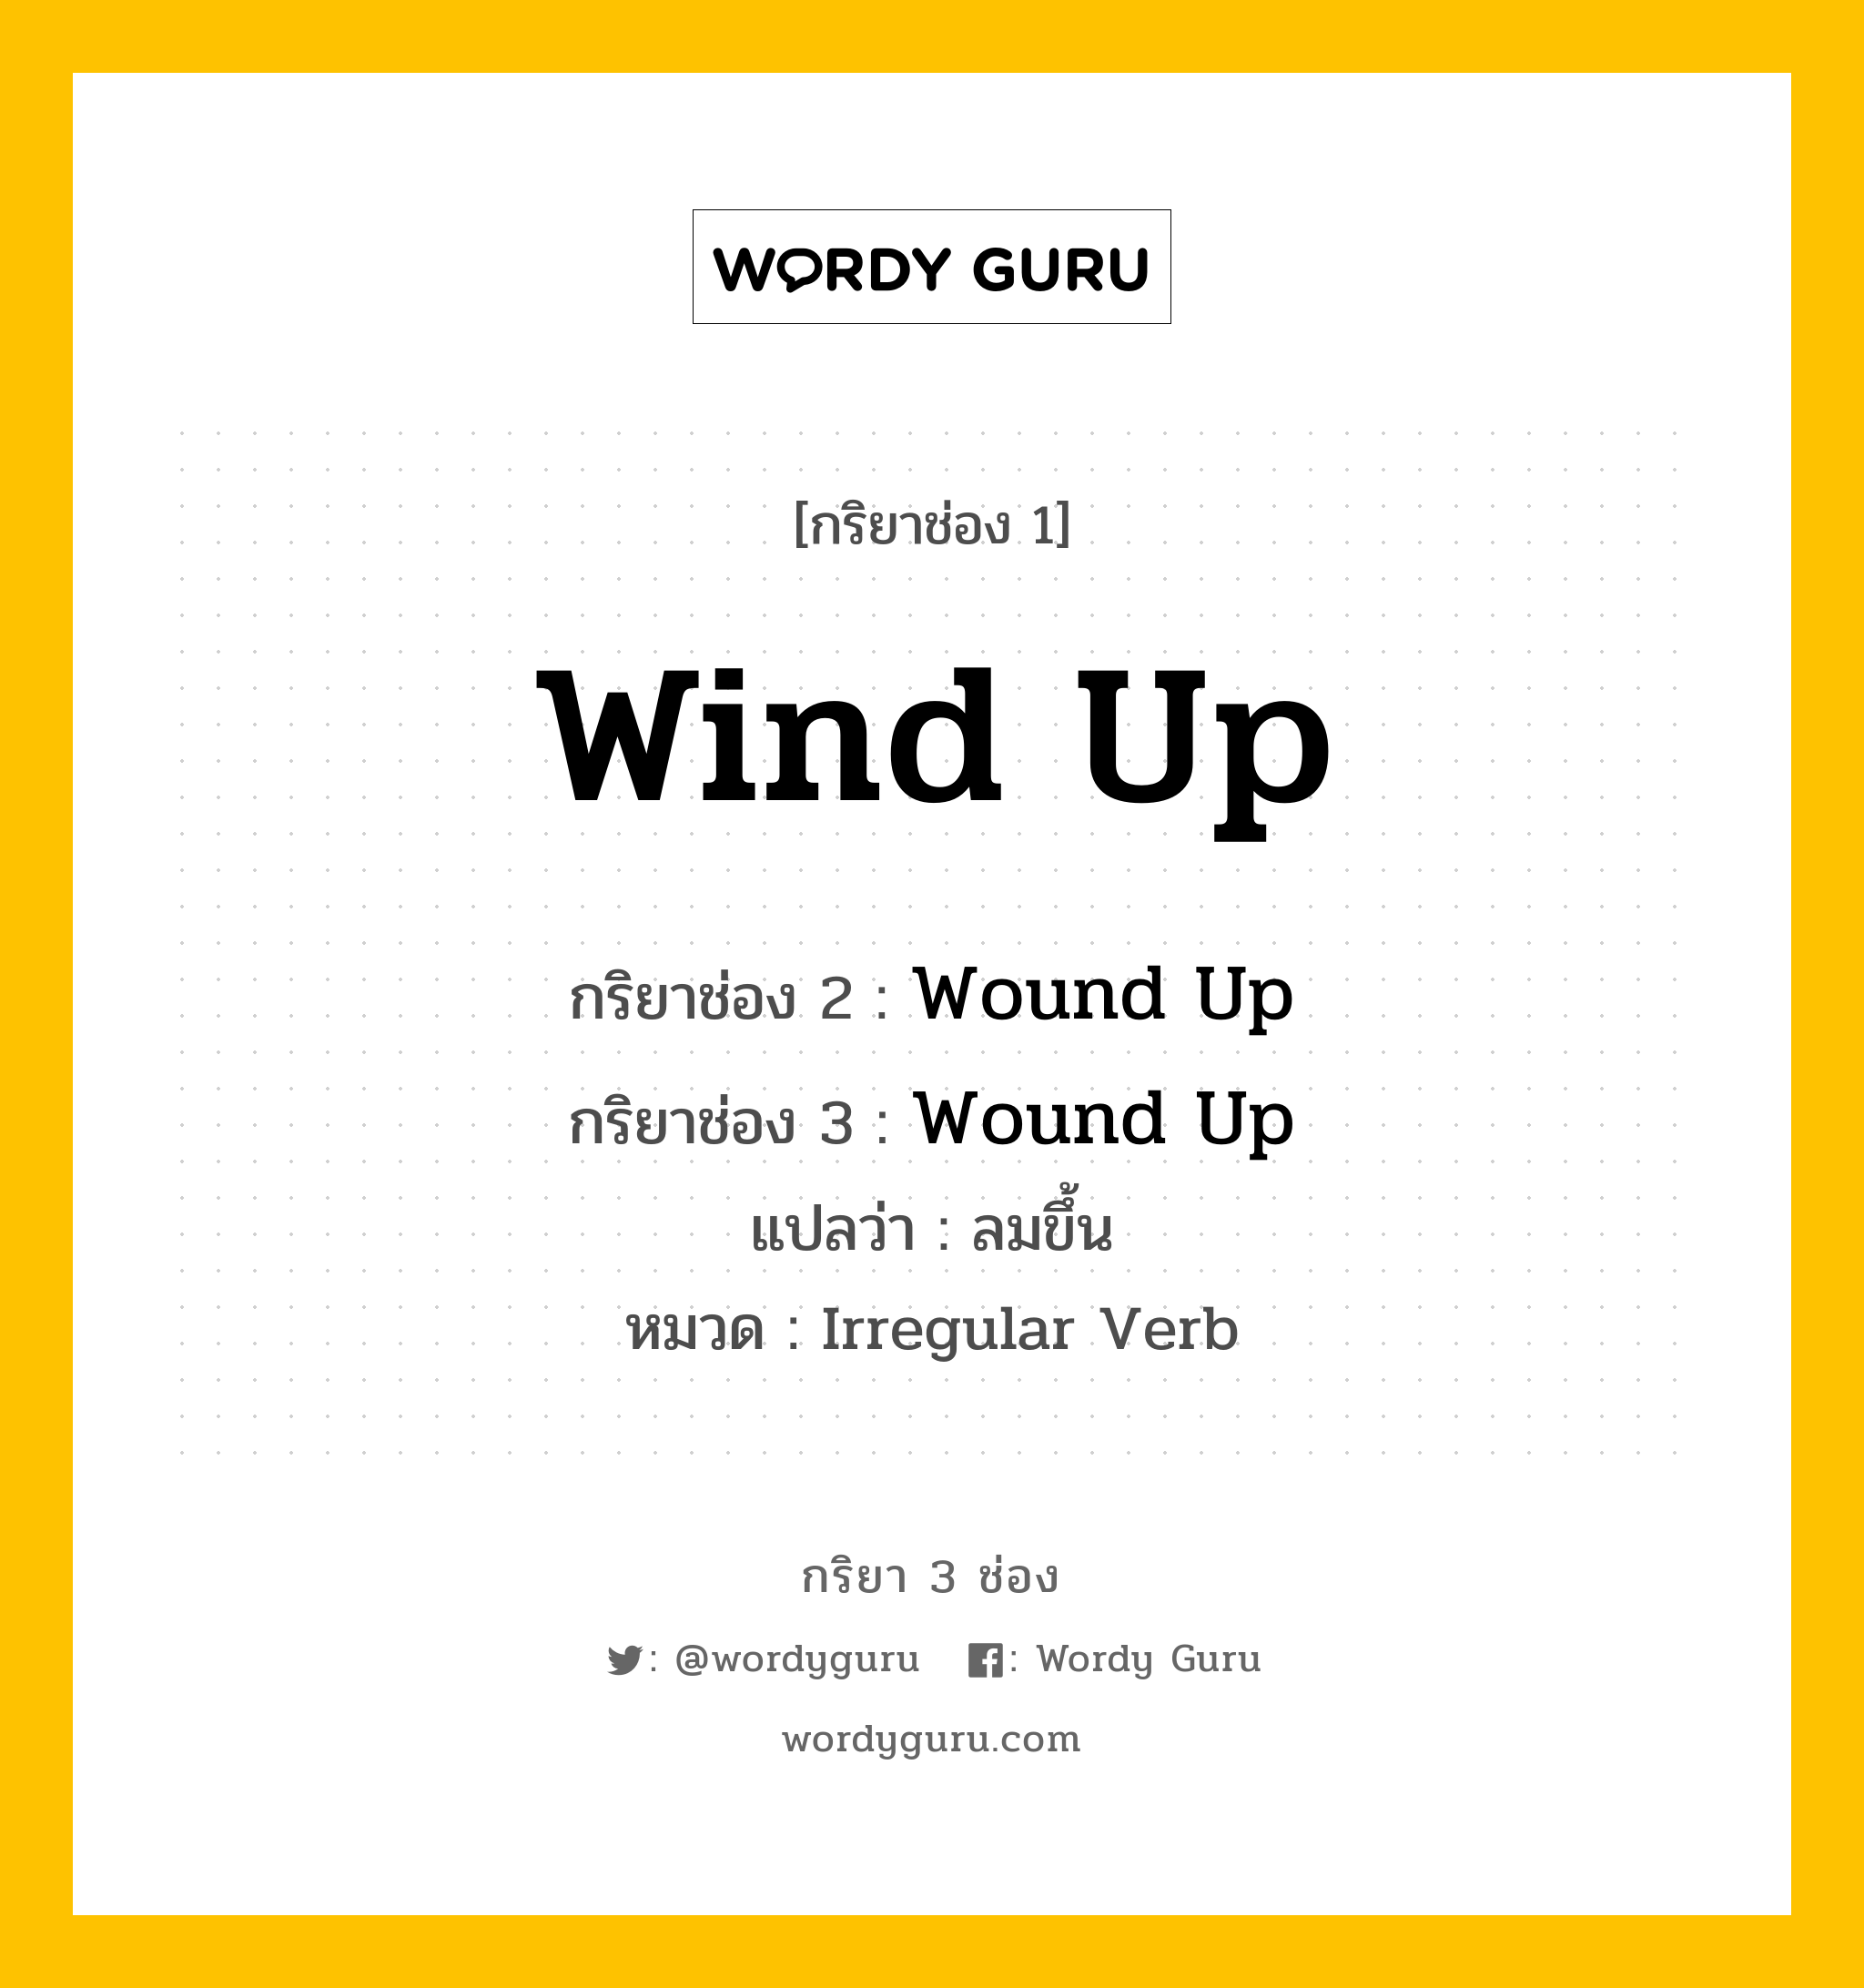 กริยา 3 ช่อง: Wind Up ช่อง 2 Wind Up ช่อง 3 คืออะไร, กริยาช่อง 1 Wind Up กริยาช่อง 2 Wound Up กริยาช่อง 3 Wound Up แปลว่า ลมขึ้น หมวด Irregular Verb หมวด Irregular Verb